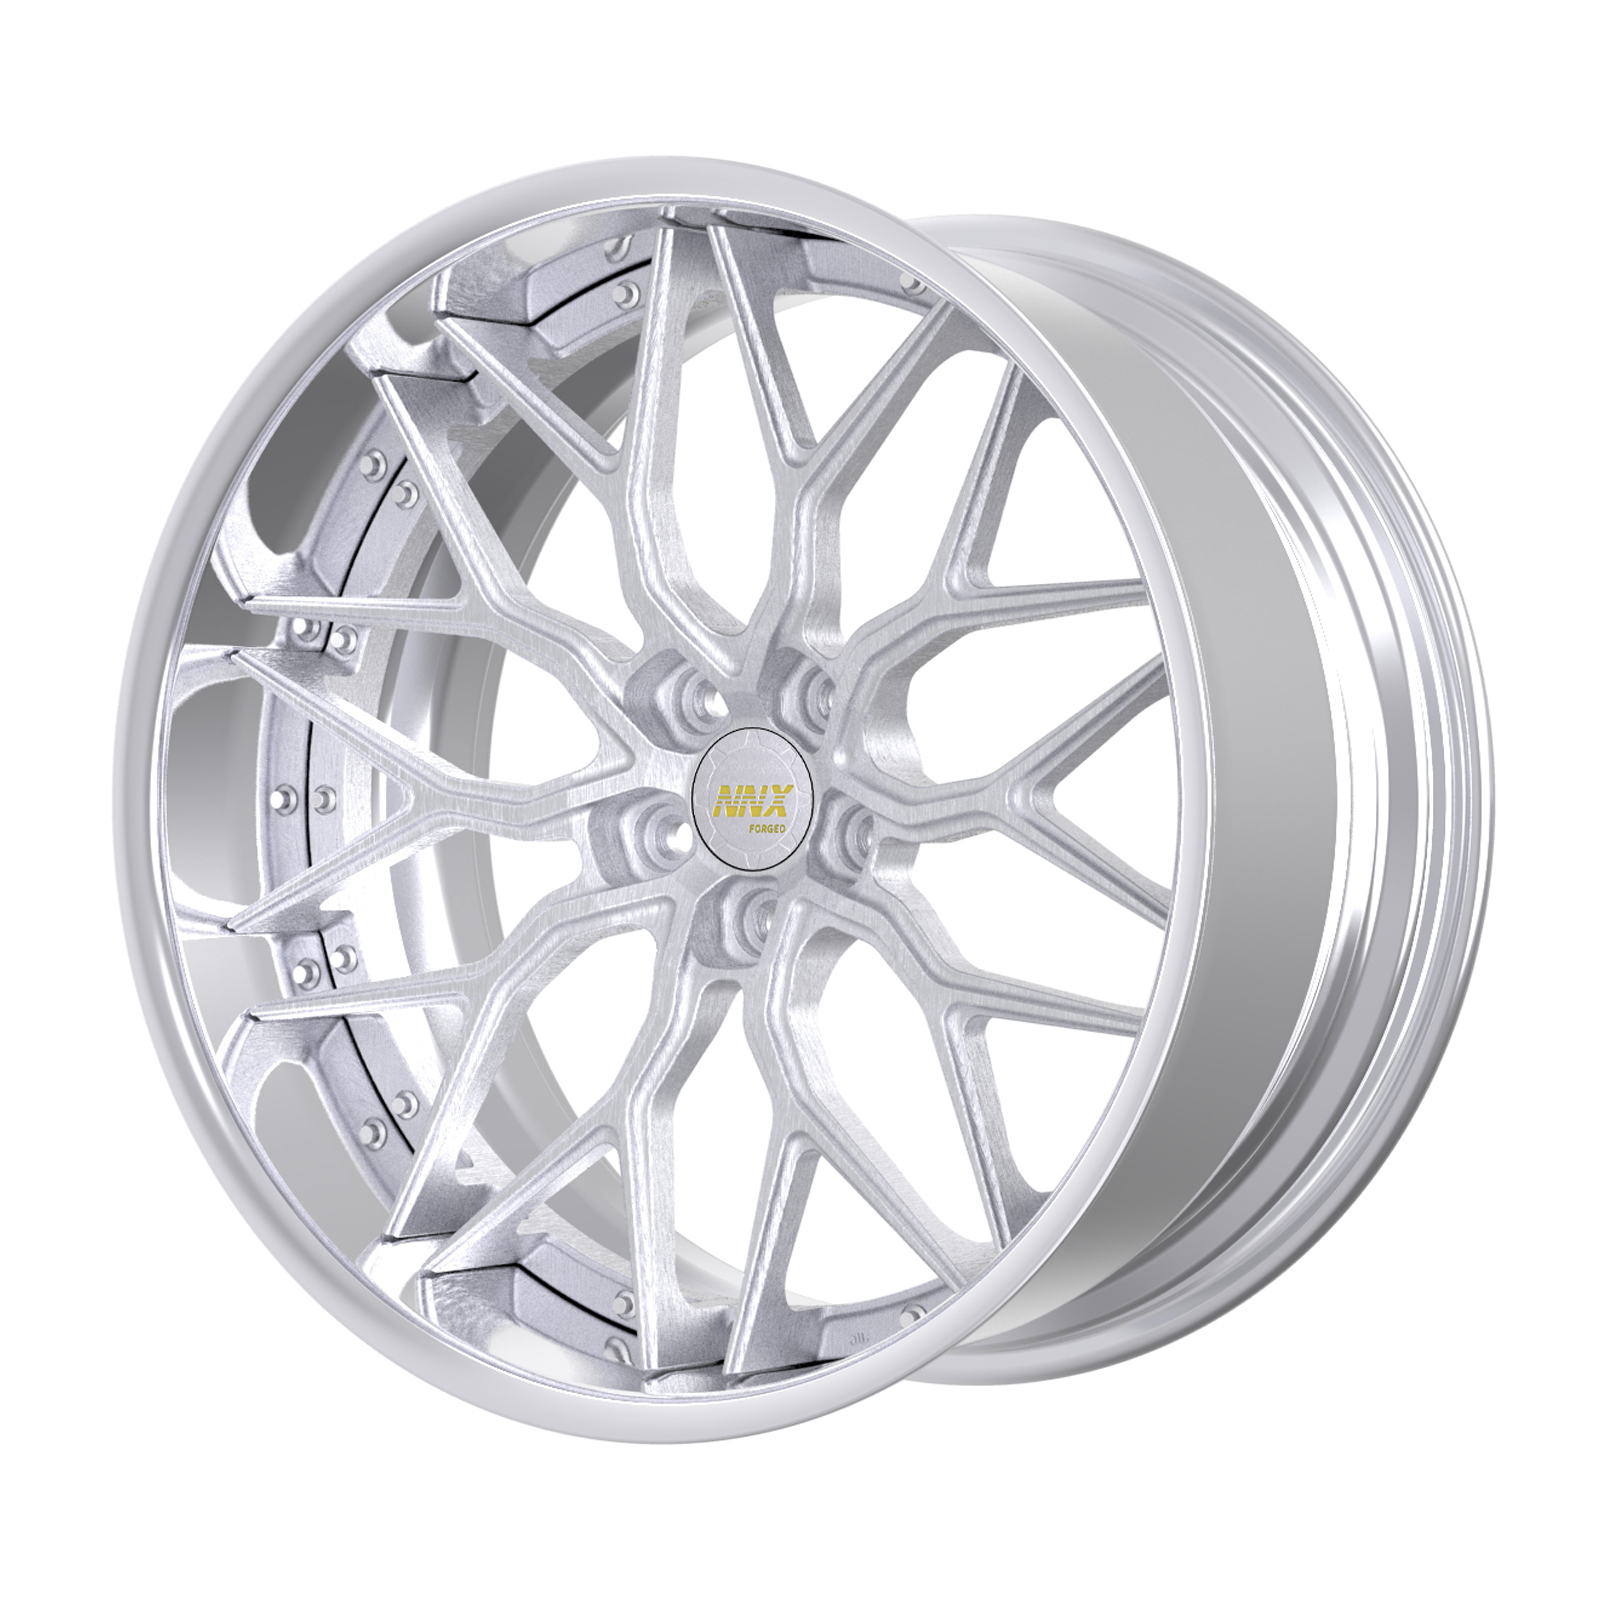 NNX-S129 Nuevos diseños de ruedas forjadas de aluminio 5 × 120 5 × 114,3 5 × 112 18 19 20 21 22 pulgadas, aleación de 18 19 20 21 22 pulgadas siempre en stock